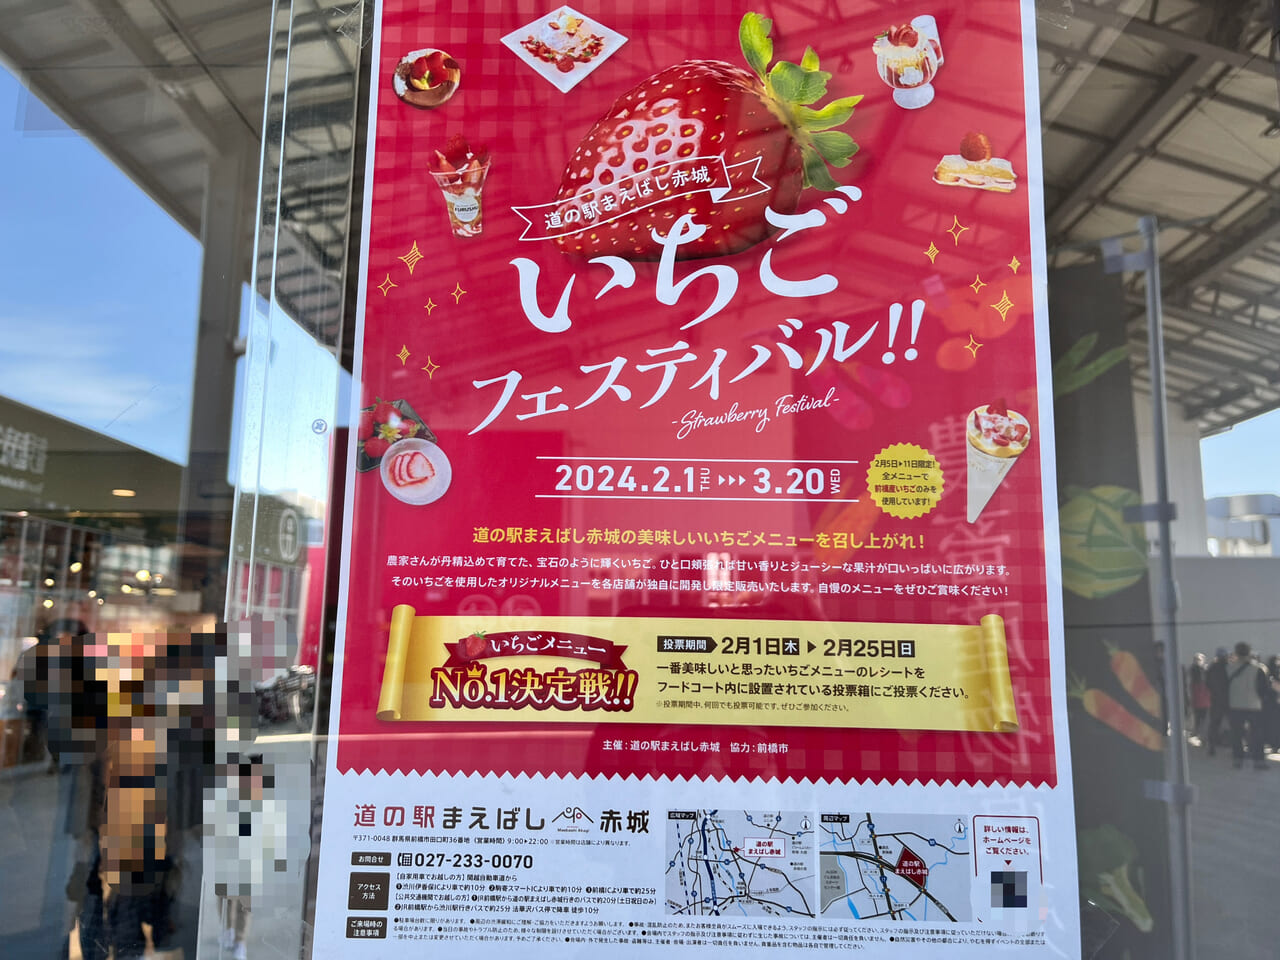 「道の駅まえばし赤城 いちごフェスティバル」開催告知のポスター